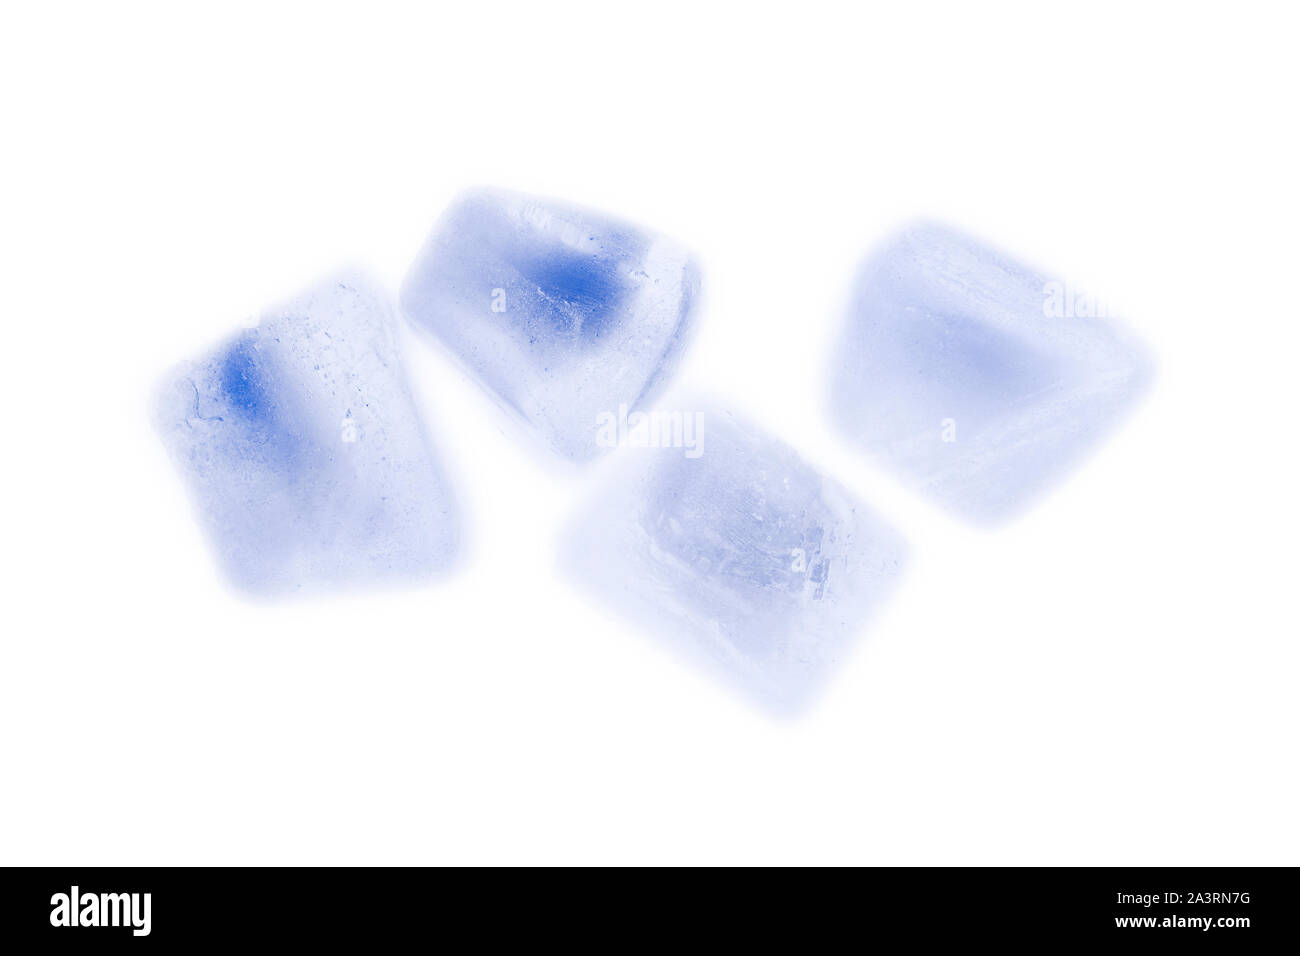 Natürliche Würfel aus Eis. Studio Bild der natürlichen Eiswürfel. Stockfoto